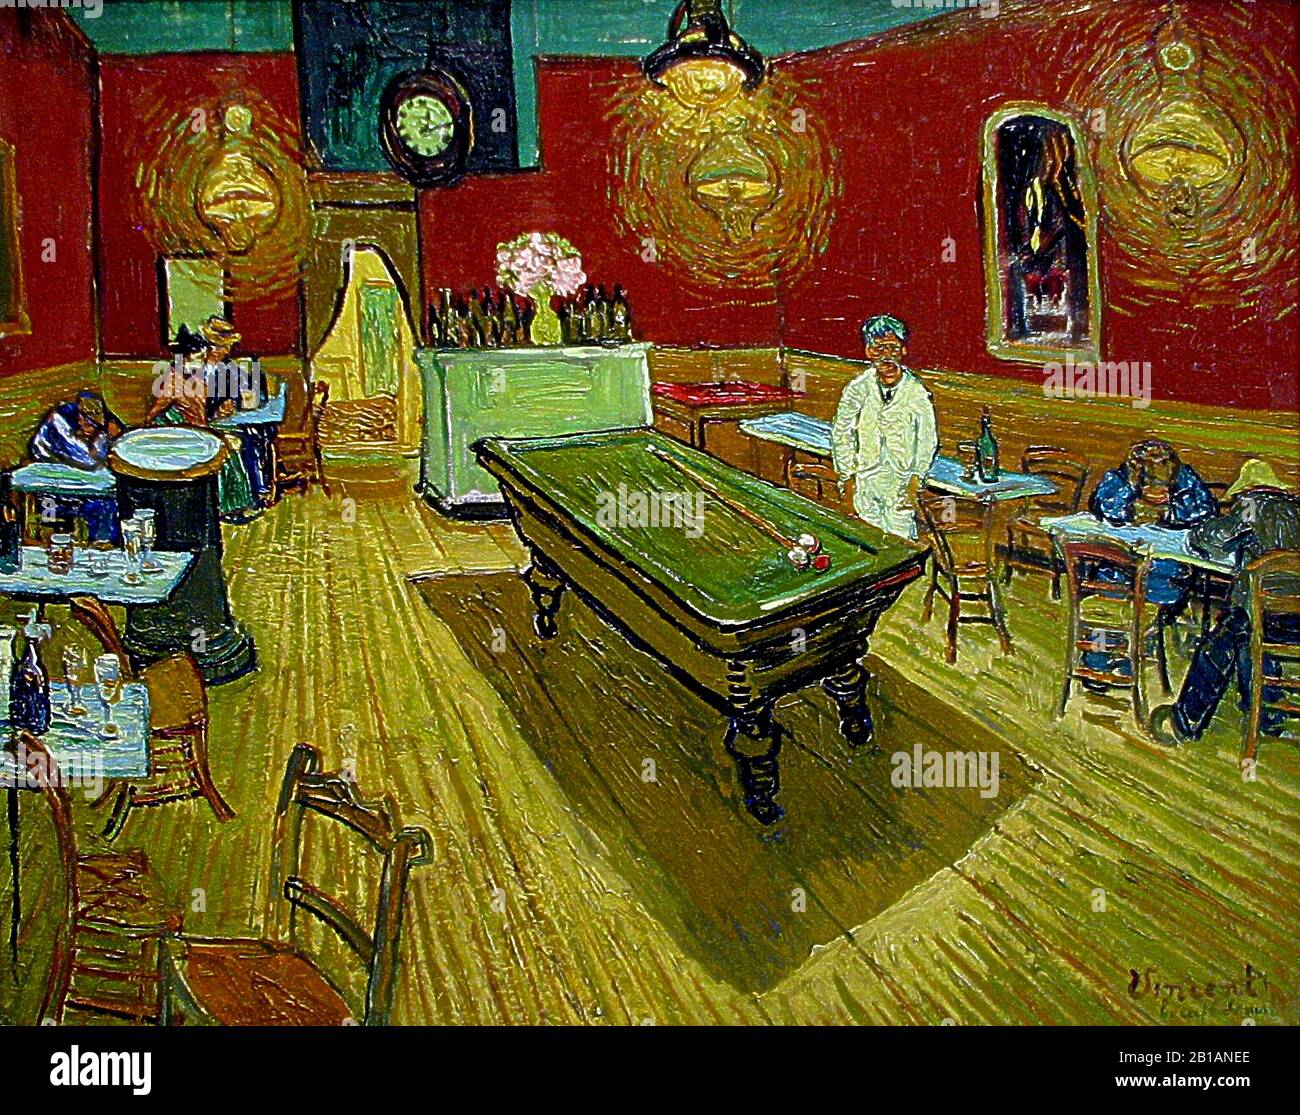 The Night Cafe, im Jahr 1888 - Gemälde von Vincent van Gogh - Sehr hohe Auflösung und hochwertige Bilder Stockfoto